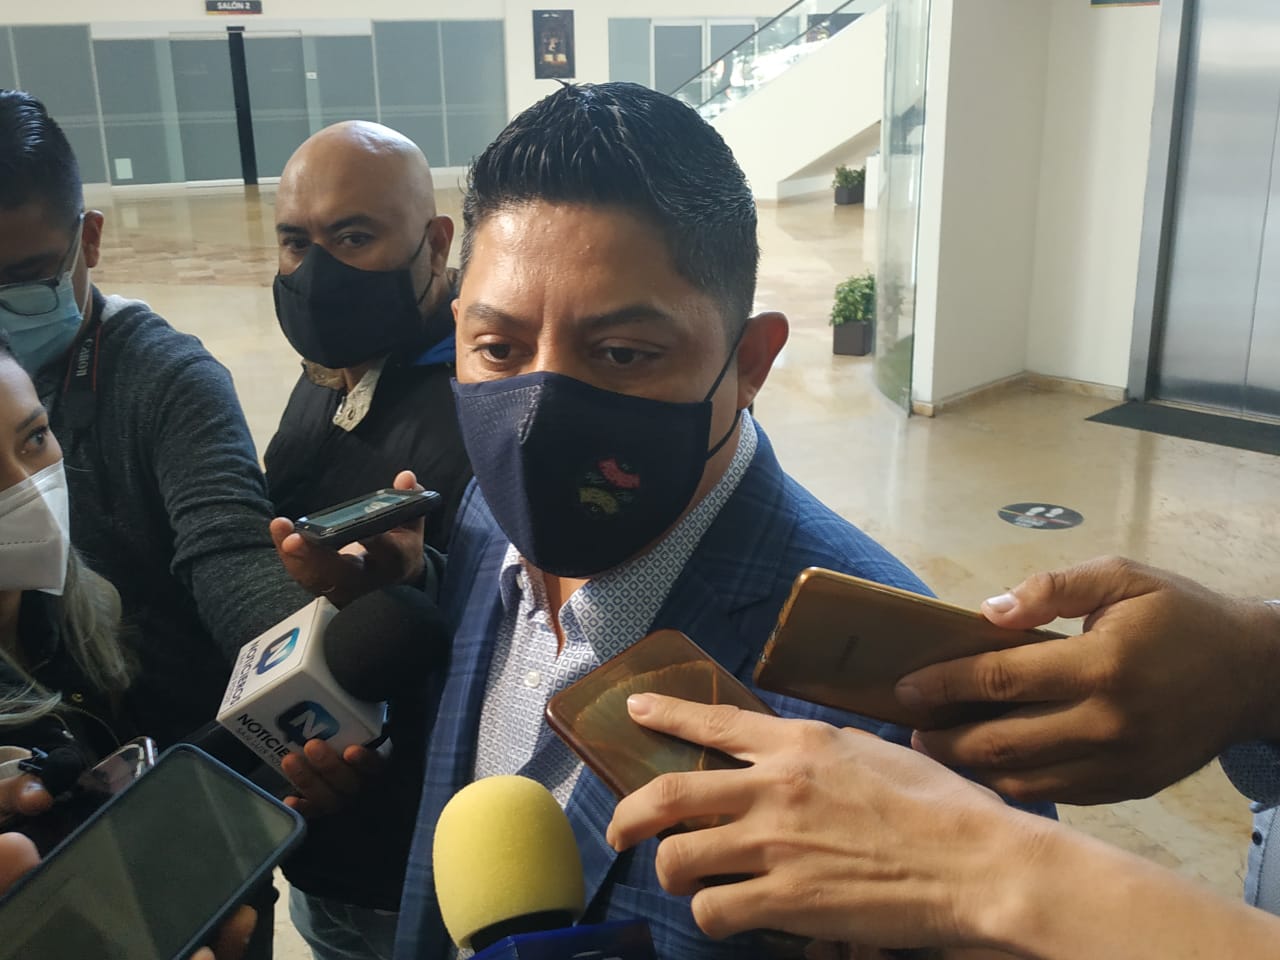 En SLP pasaron hechos de corrupción “peores que los de Duarte en Veracruz”: Gallardo